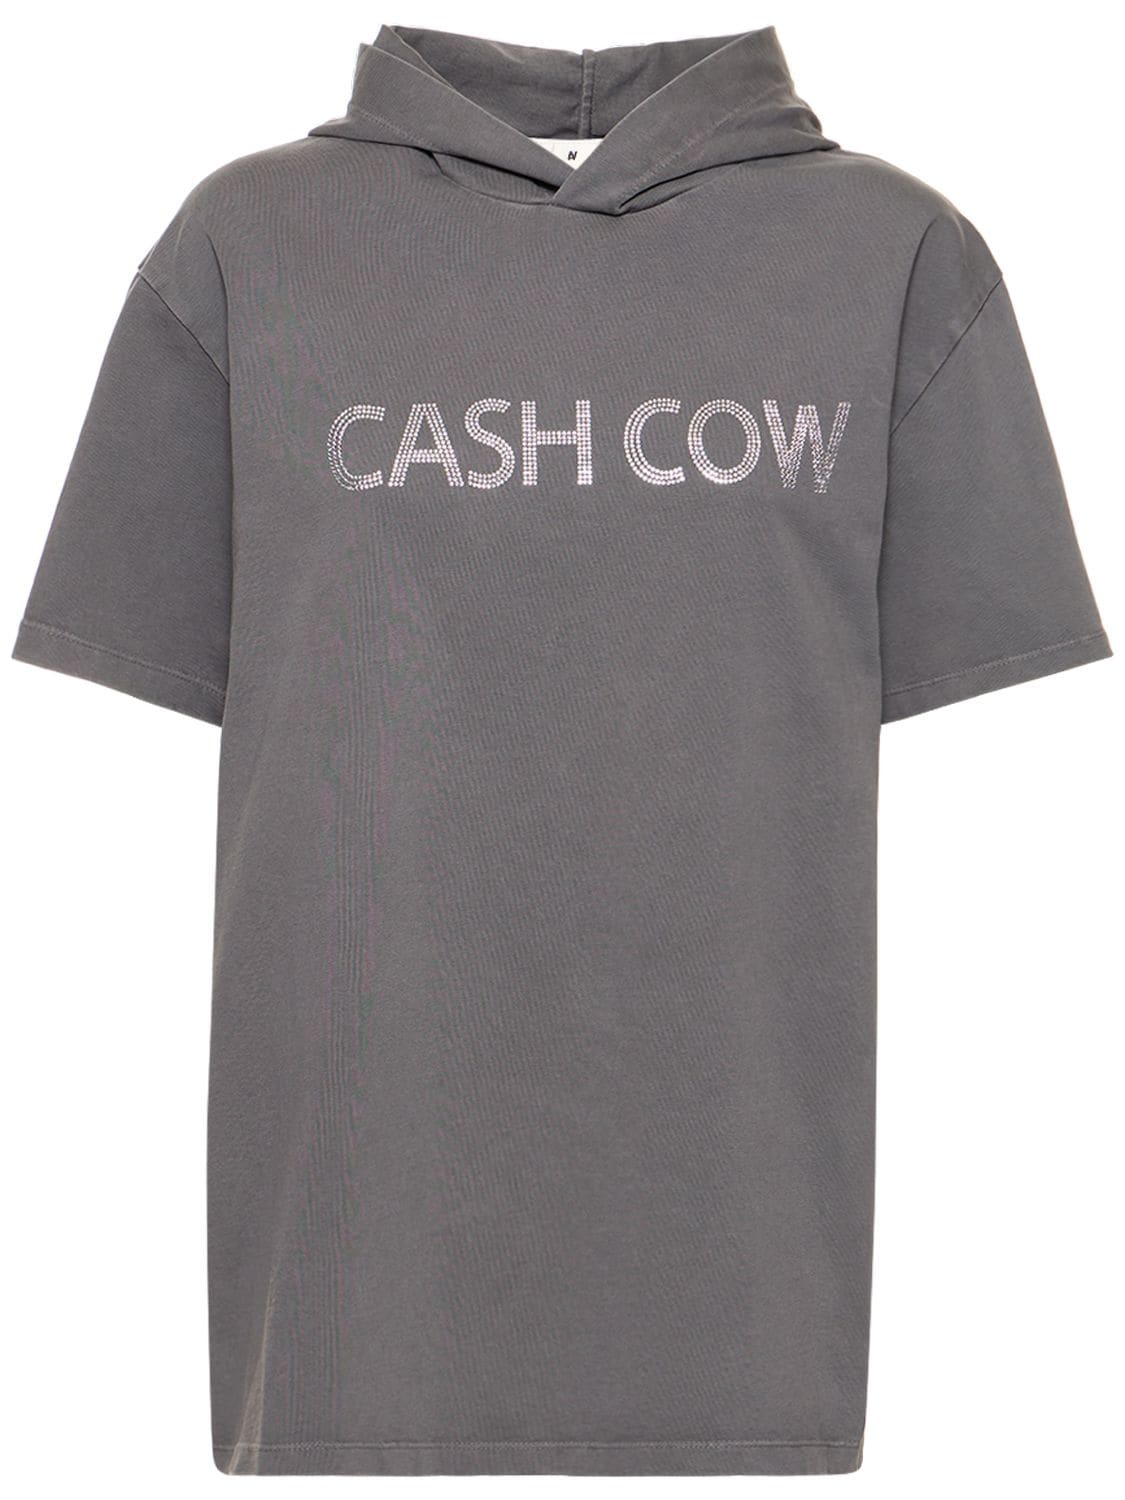 T-shirt En Coton À Capuche Cash Cow - AVAVAV - Modalova